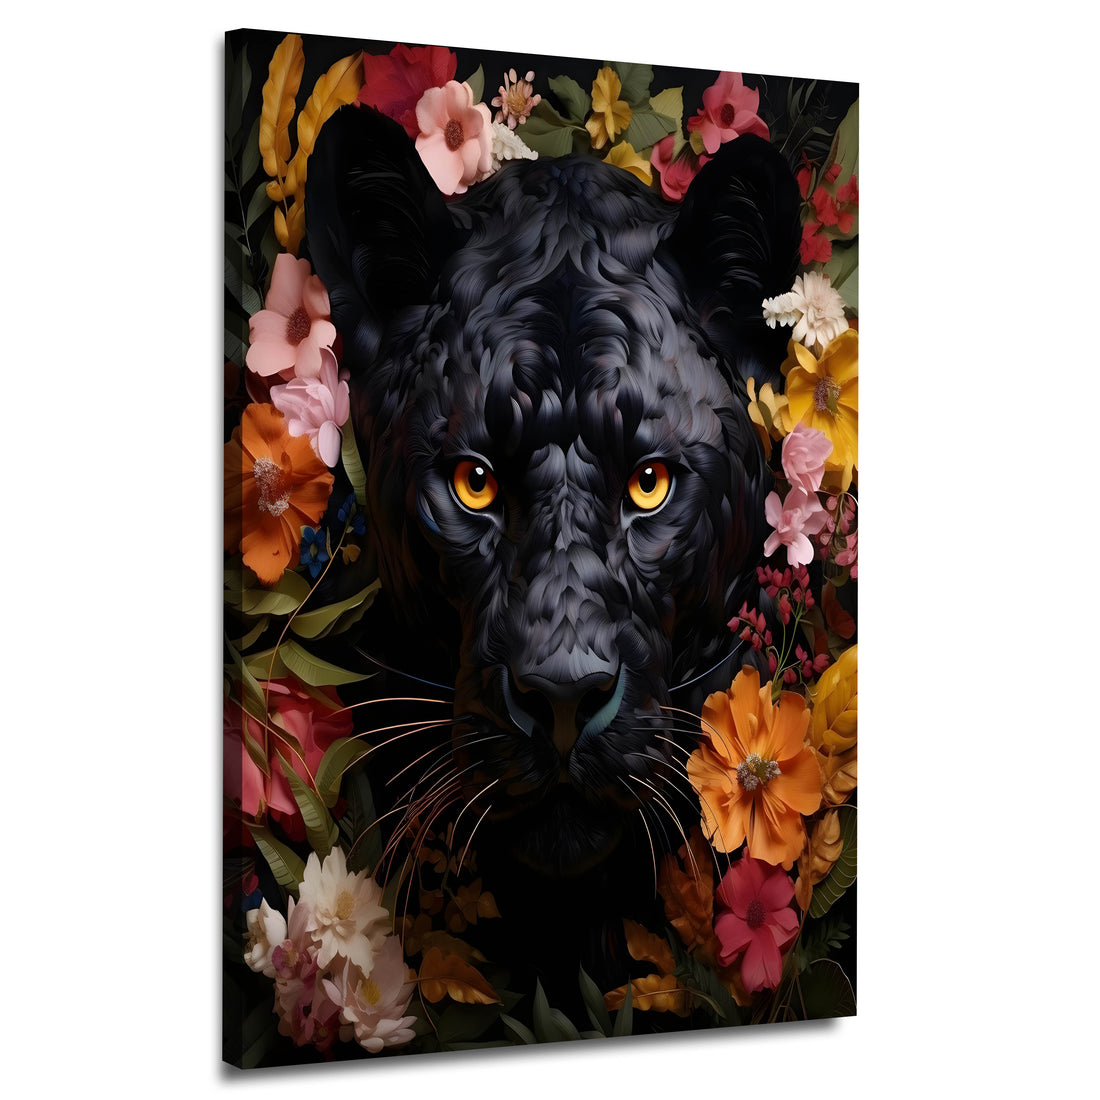 Wandbild abstrakt mit schwarzer Panther und Blumen